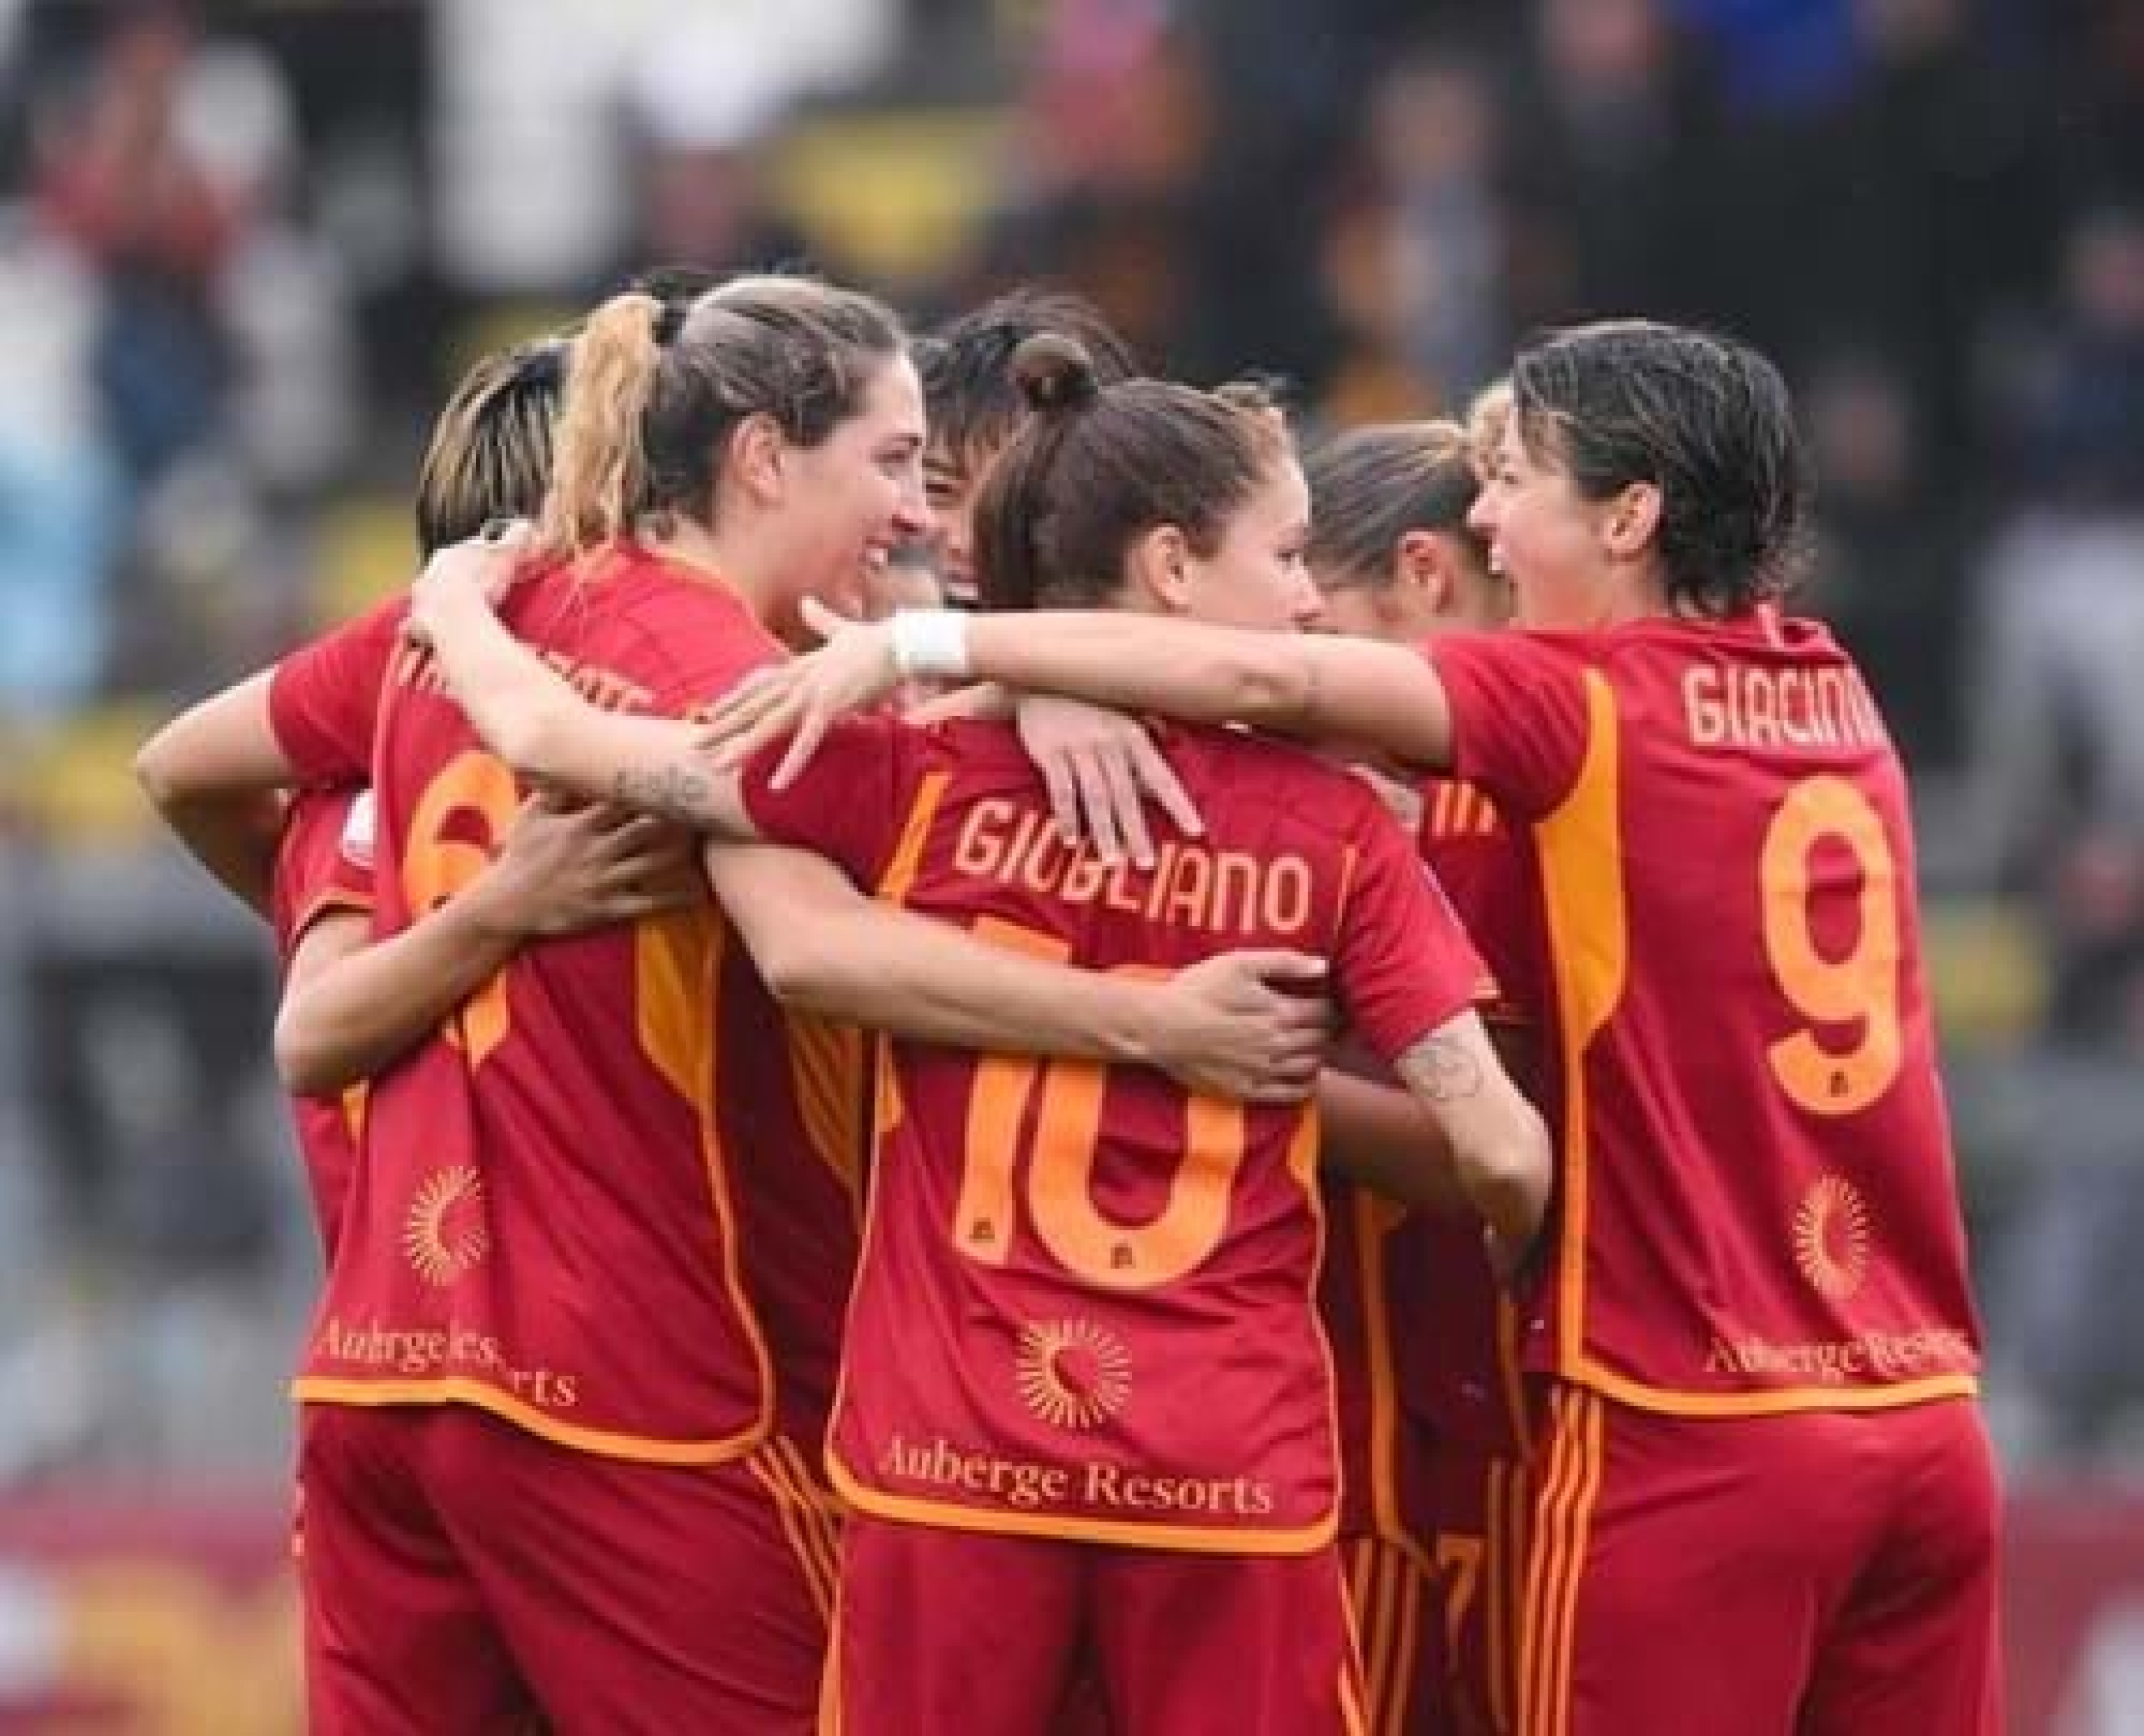 juve-inter 0-2, la roma è campione d'italia donne senza giocare